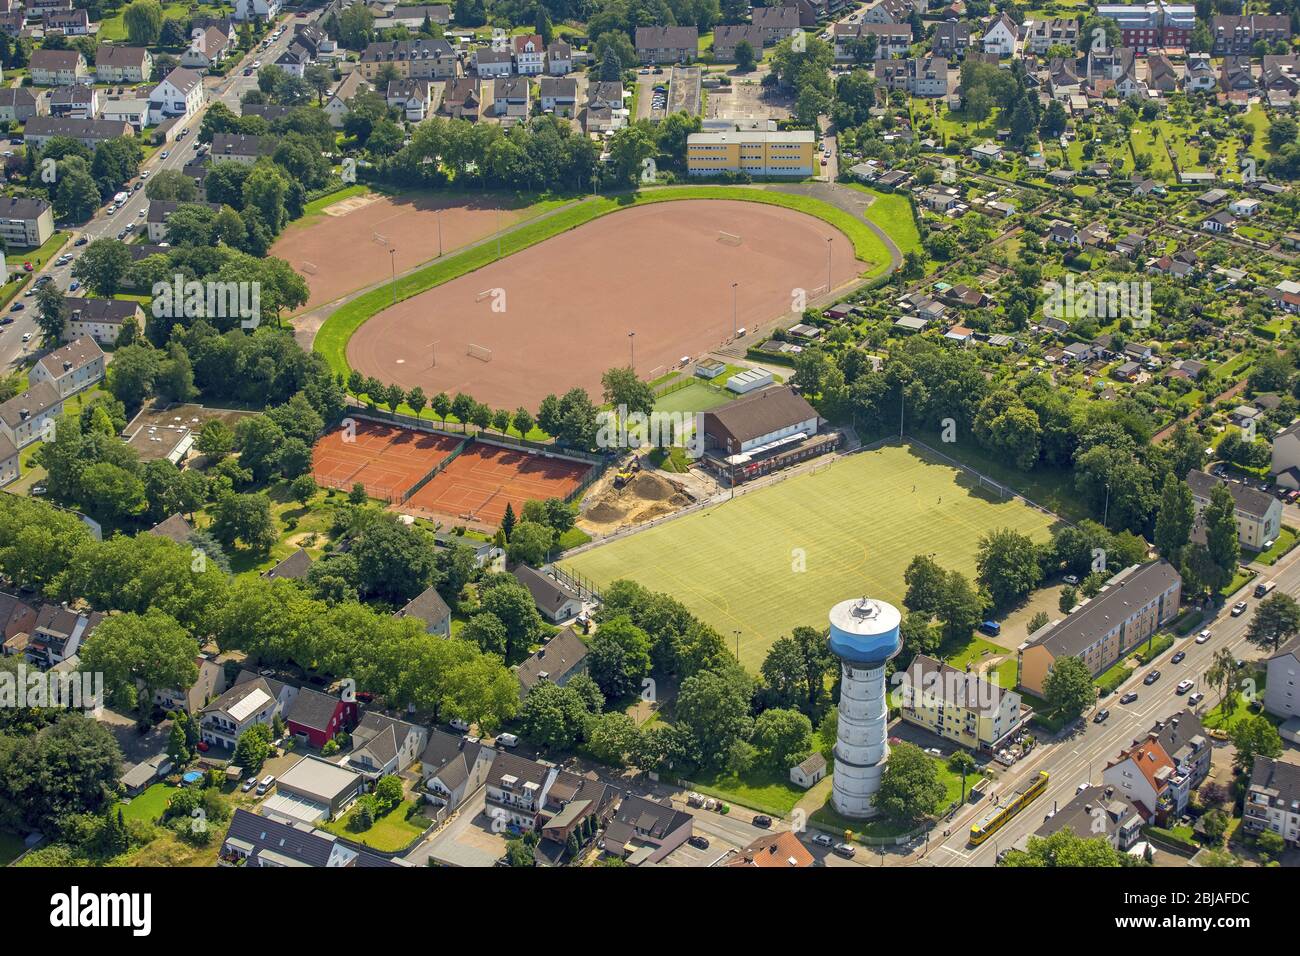 Terrains de sport et terrain de football du DJK Adler Union Essen-FRintro e. V. à Essen, 23.06.2016, vue aérienne, Allemagne, Rhénanie-du-Nord-Westphalie, région de la Ruhr, Essen Banque D'Images